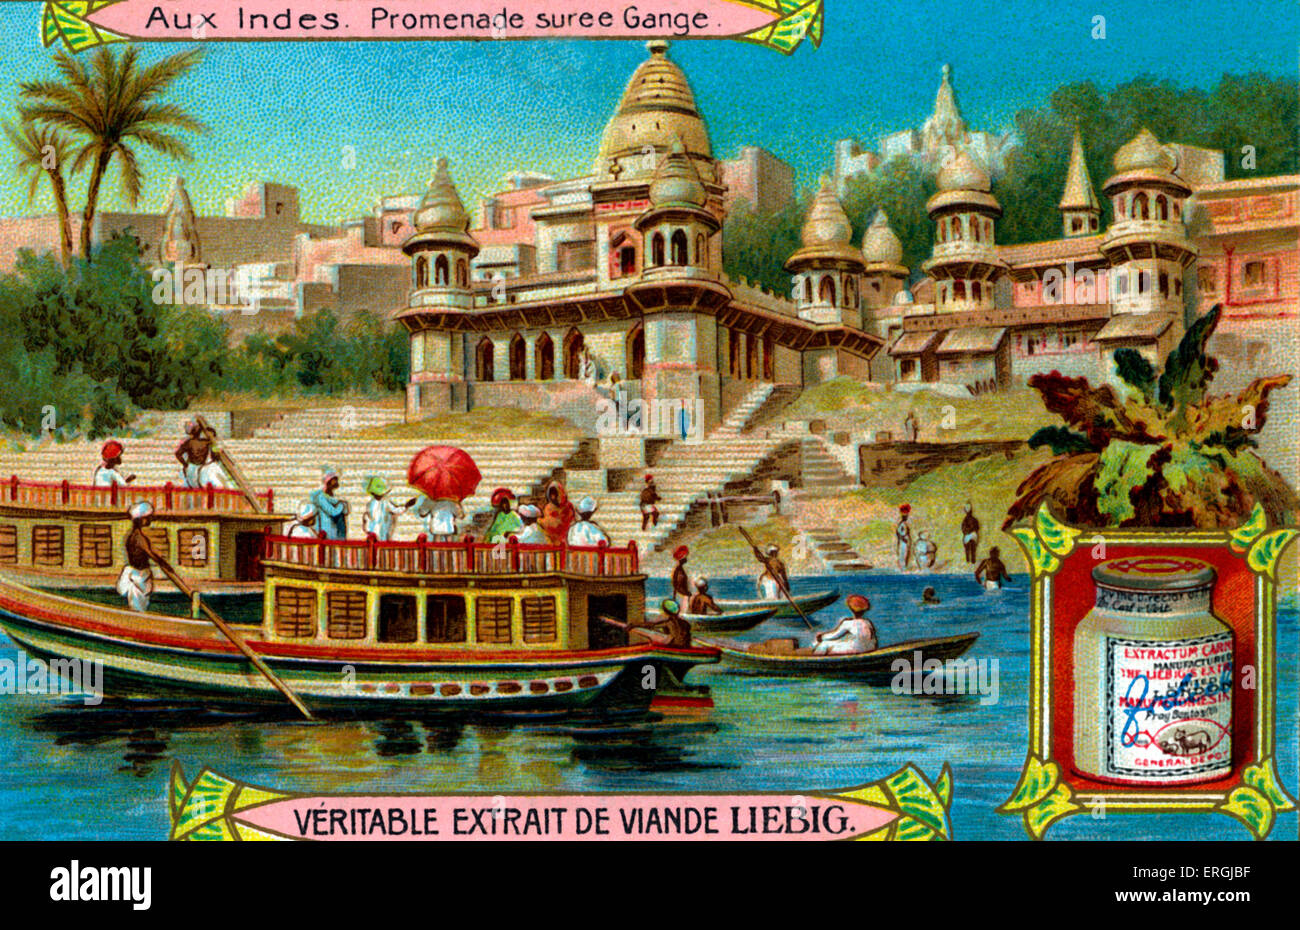 Promenade am Ganges, Indien. Anfang des 20. Jahrhunderts Illustration von Liebig Sammelkartenspiel (Französisch-Series-Titel: "Aux Stockfoto